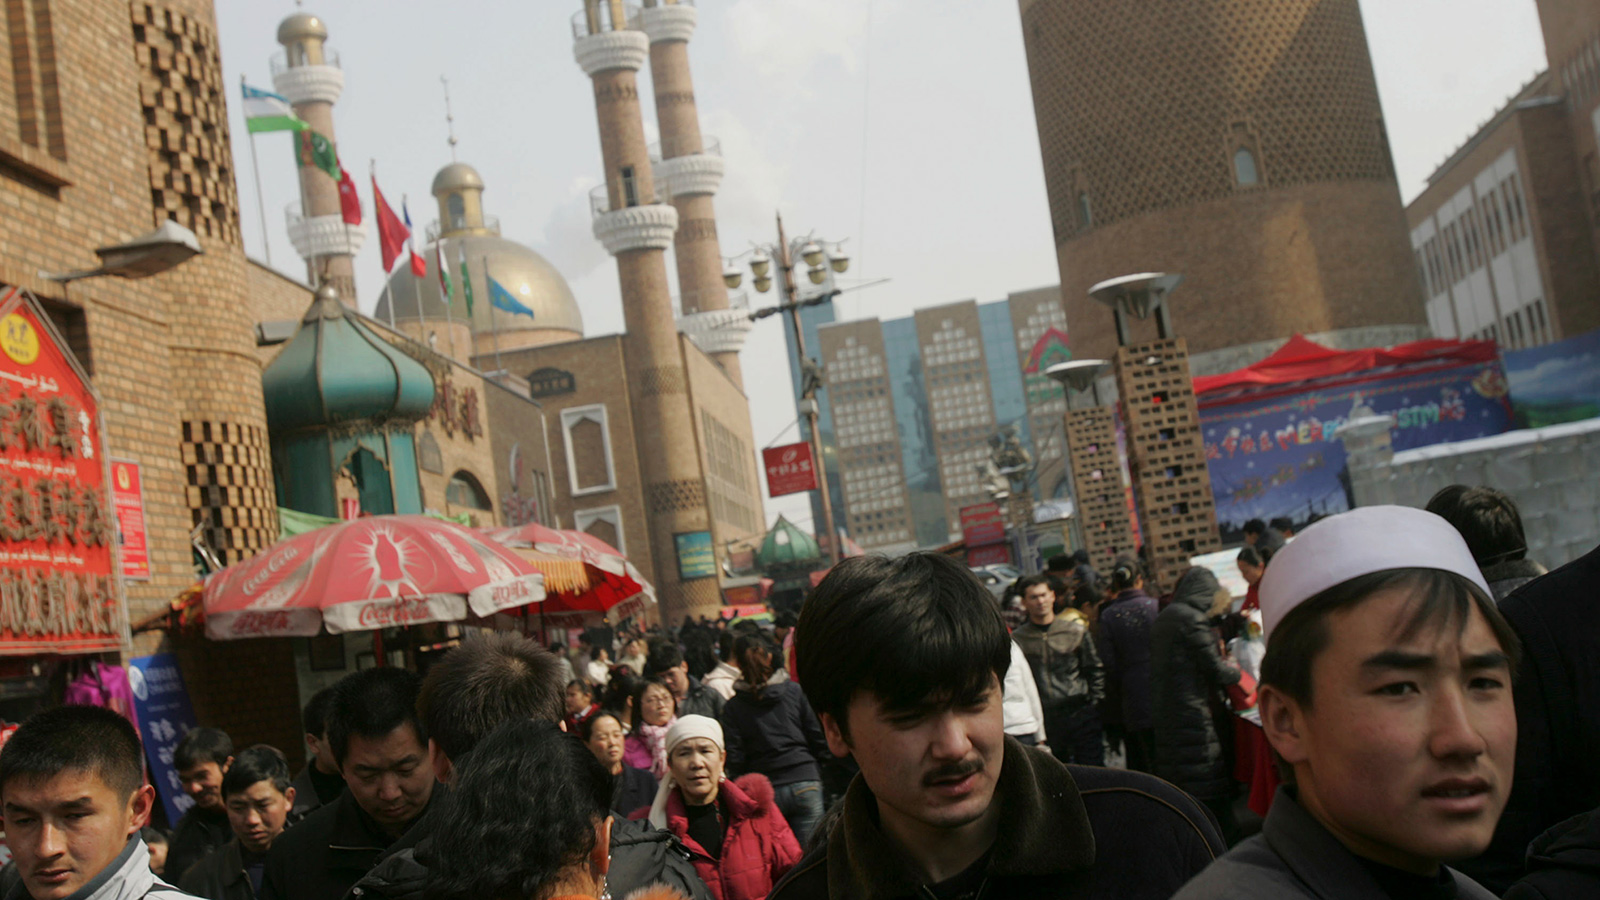 ‪نيويورك تايمز: الوثيقة تكشف كيف تتعقب الصين الإيغور وعائلاتهم‬ نيويورك تايمز: الوثيقة تكشف كيف تتعقب الصين الإيغور وعائلاتهم (غيتي)